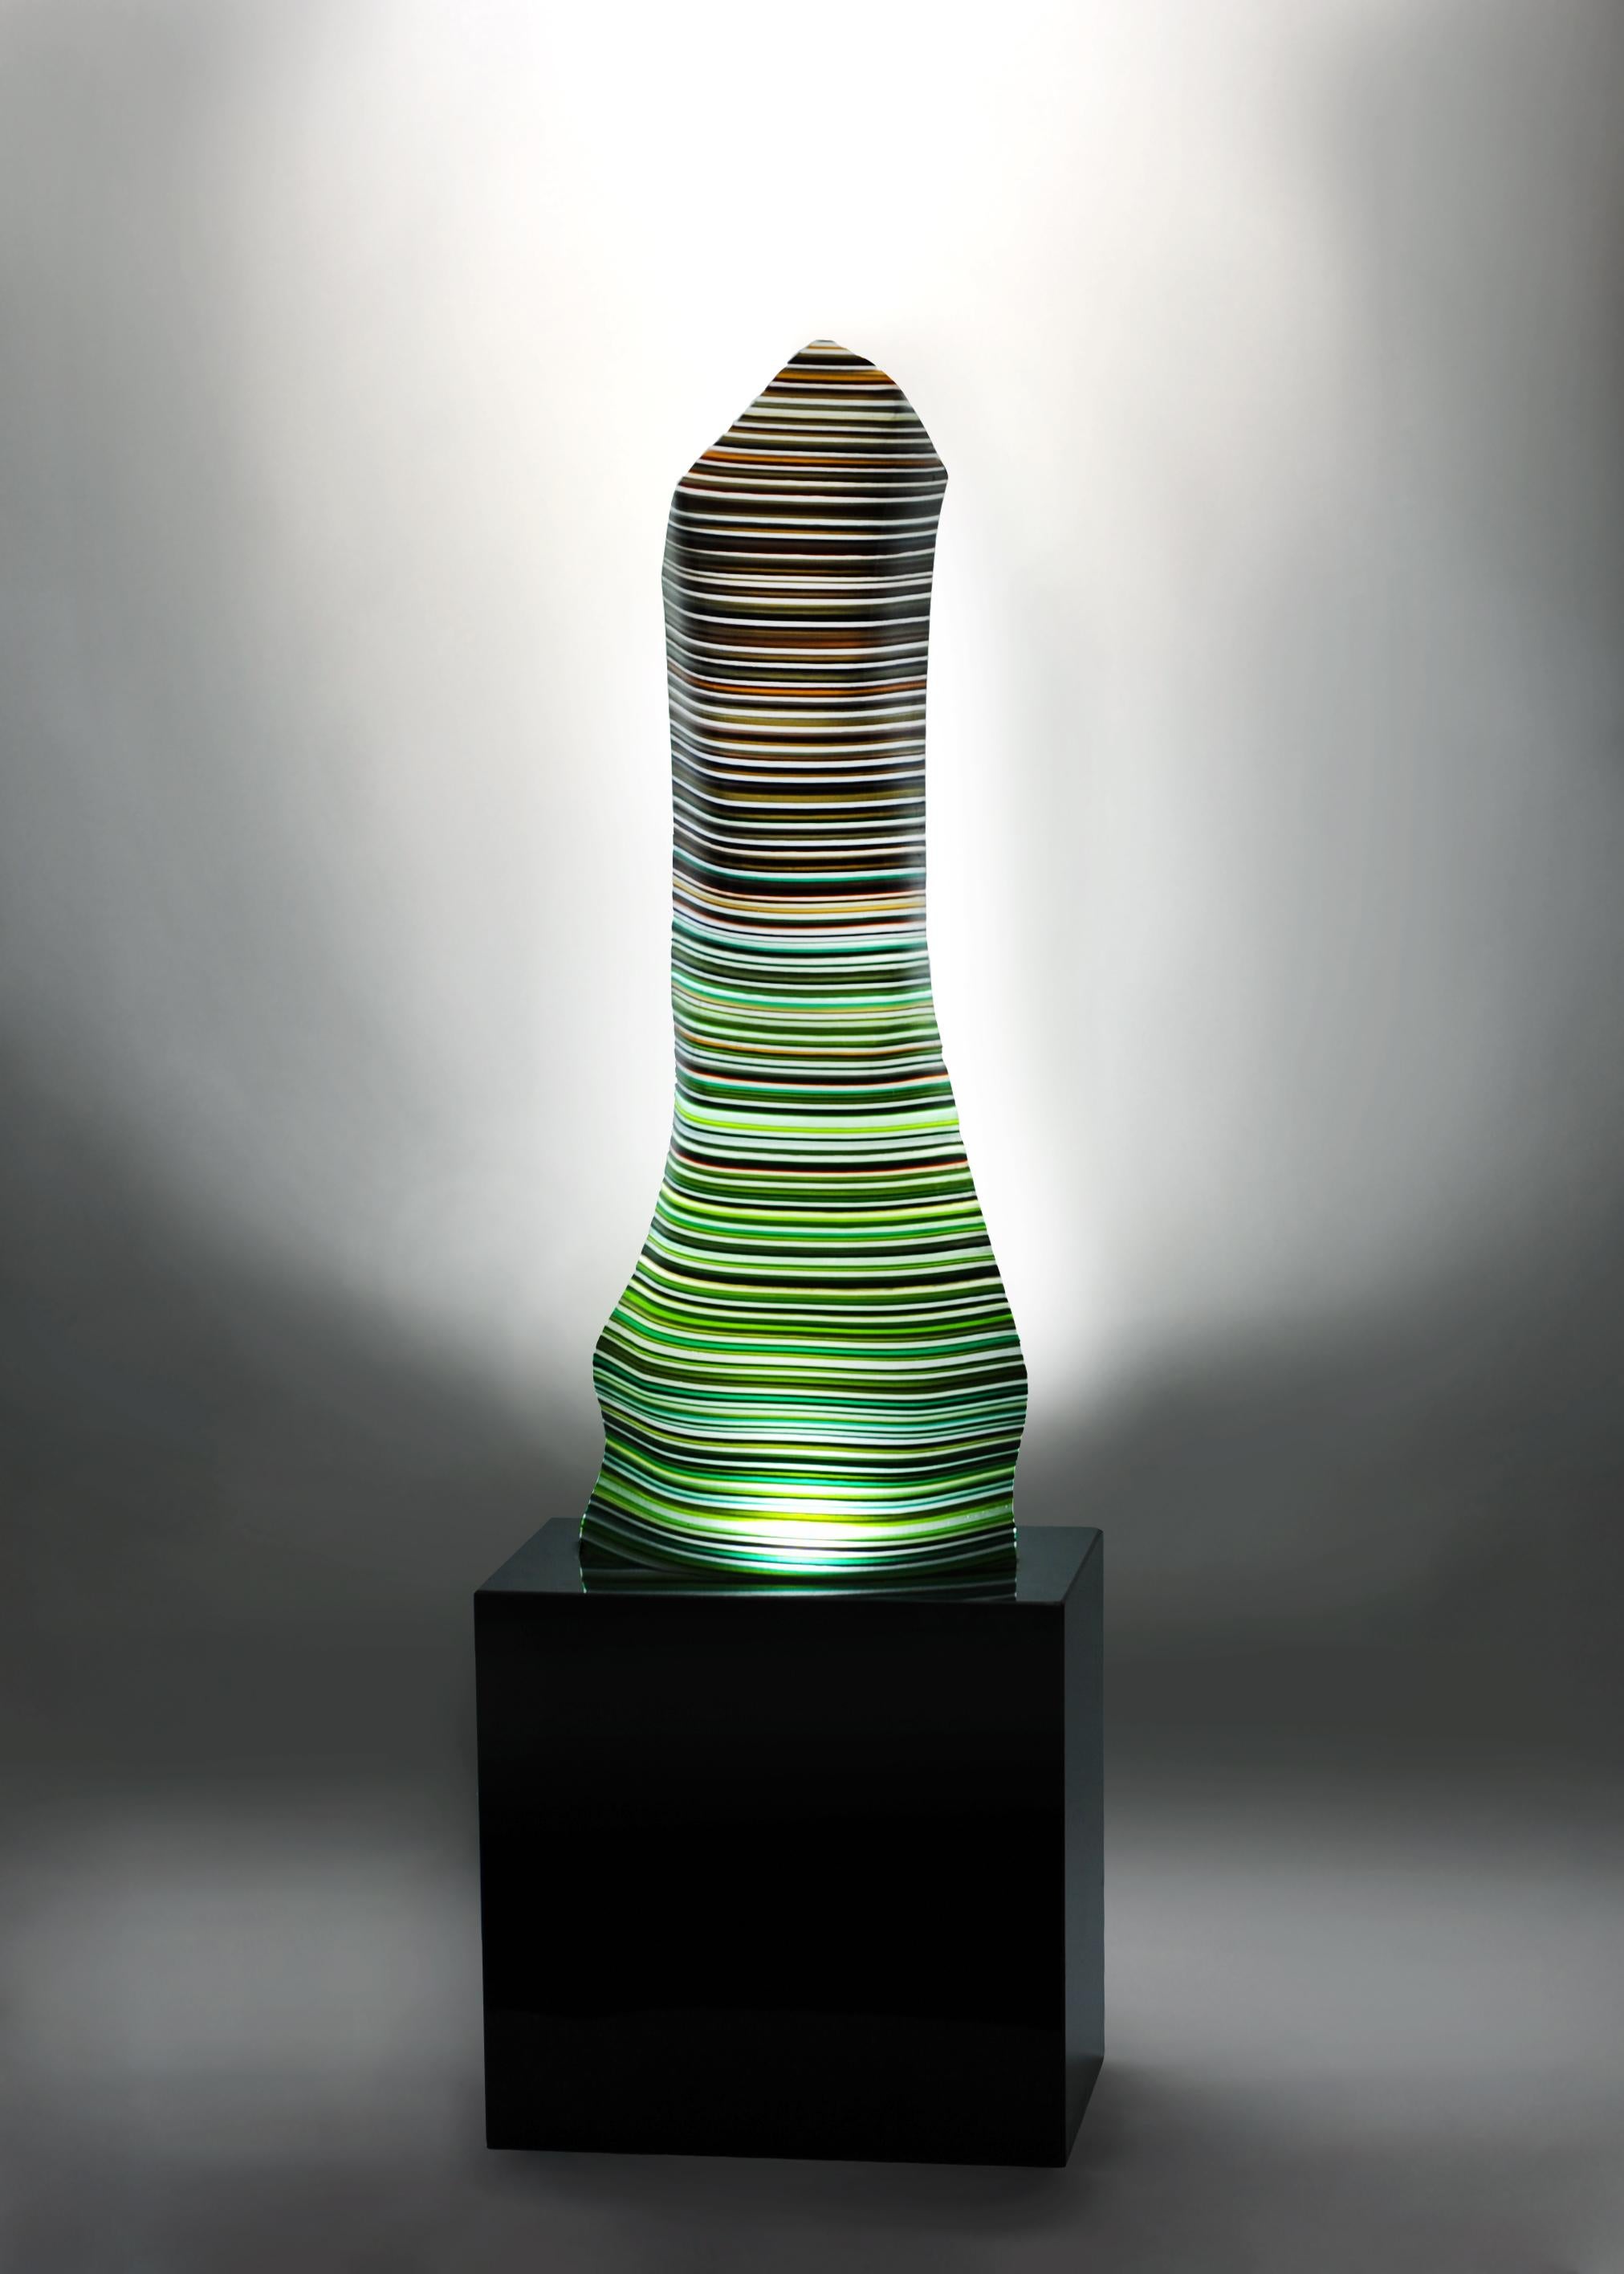 Barcodelampe mit Granitsockel.
Dieses Stück aus geschmolzenem Glas gehört zu der von Orfeo Quagliata entworfenen Kollektion Barcode Magikarpet. Exklusive Techniken des Künstlers. 100% handgefertigt mit hochwertigstem Material.
Dieses elegante